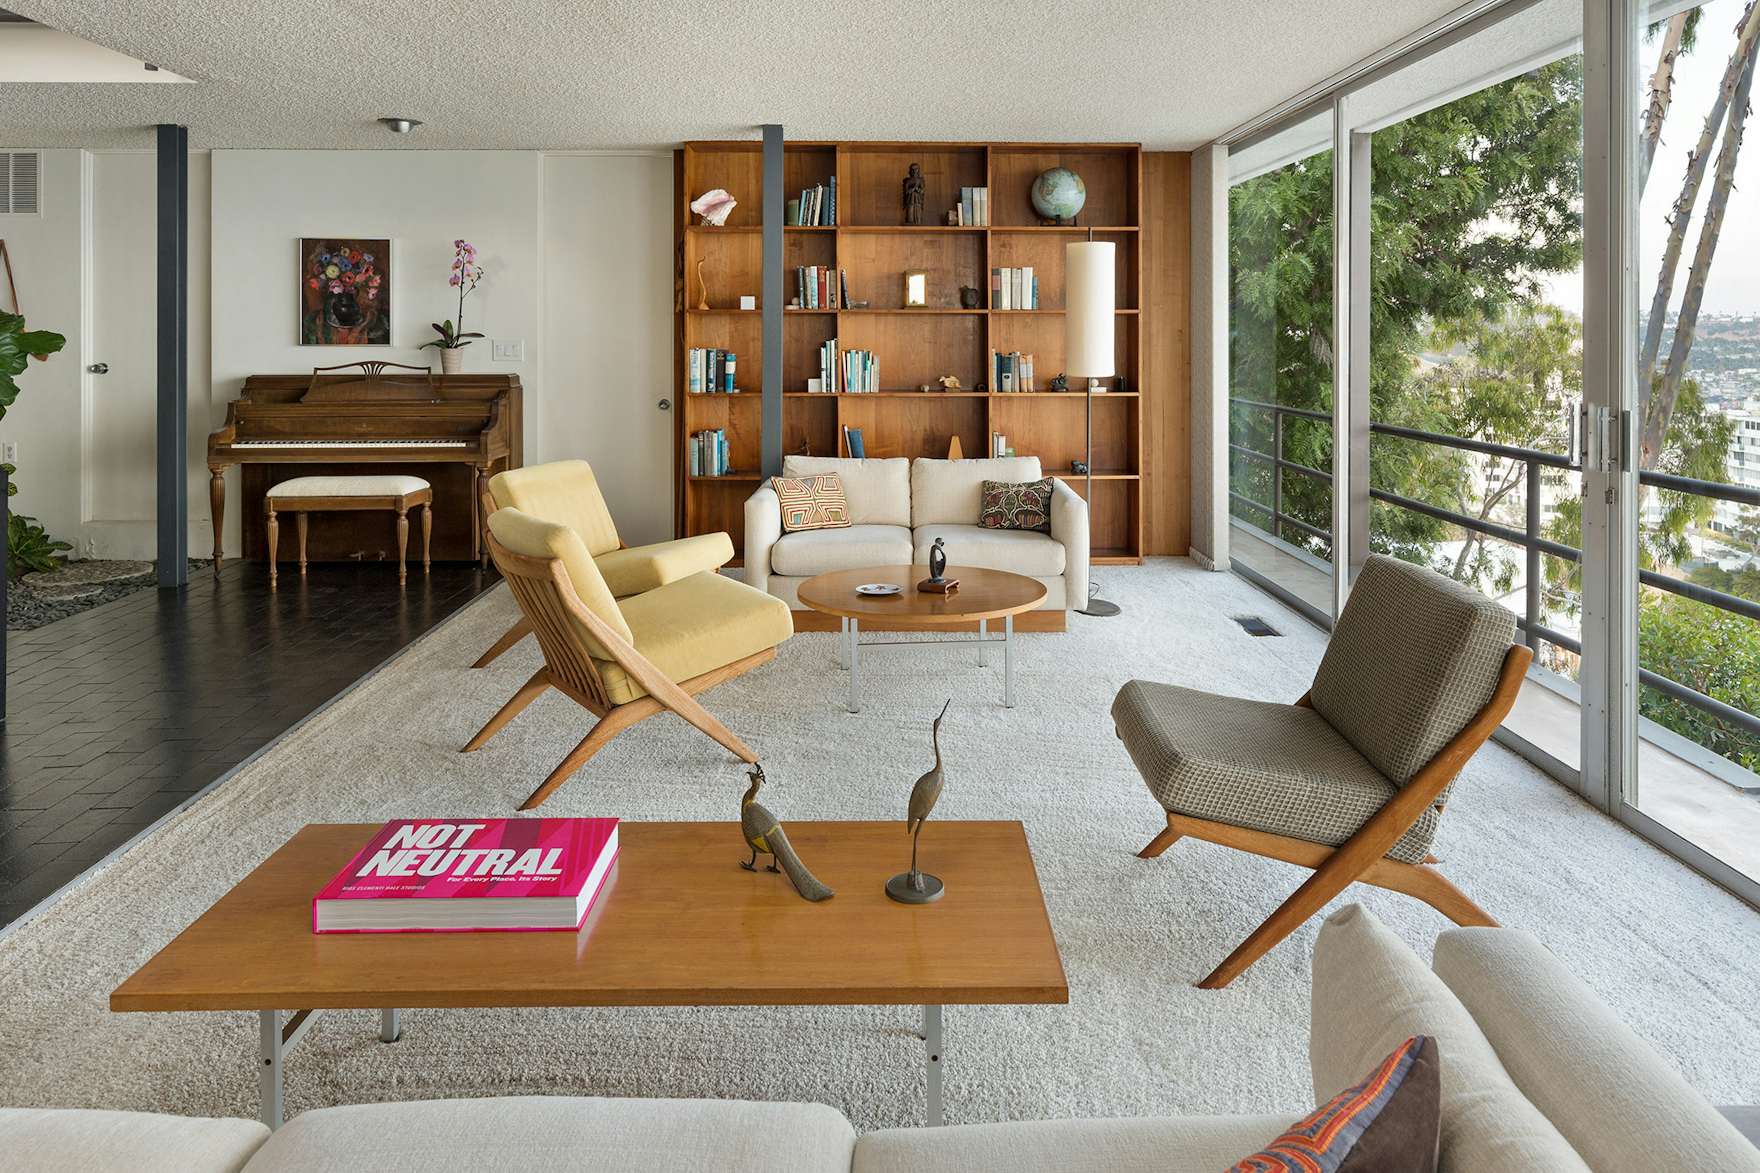 An Iconic Midcentury Home by Pierre Koenig Seeks $4.5M in Los Angeles ...